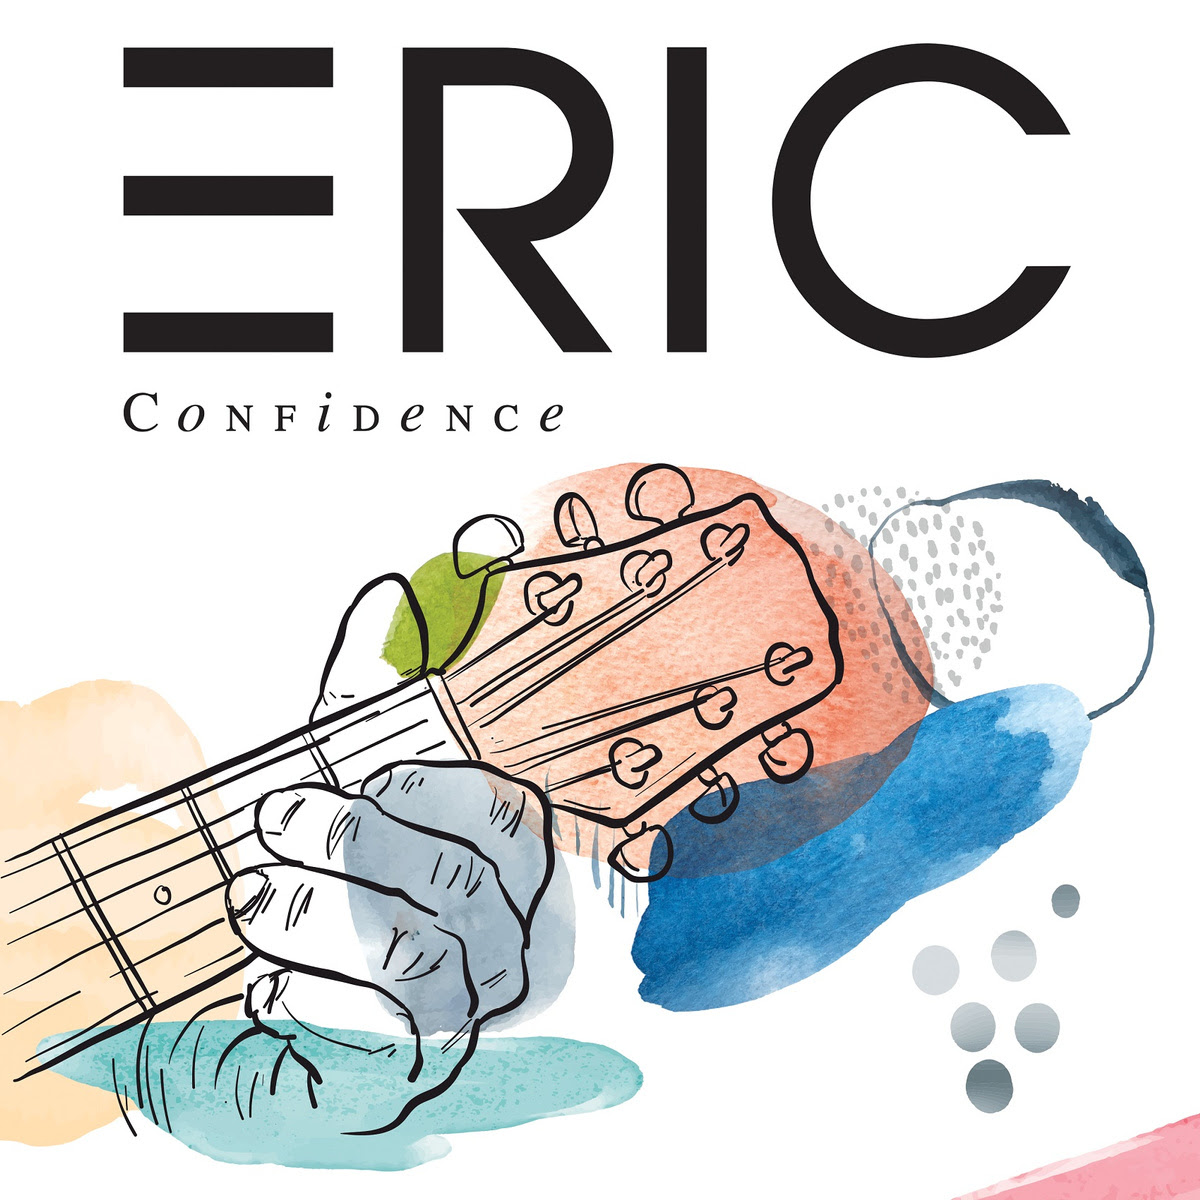 ERIC objavio novi singl “Confidence” s nadolazećeg debitantskog albuma!